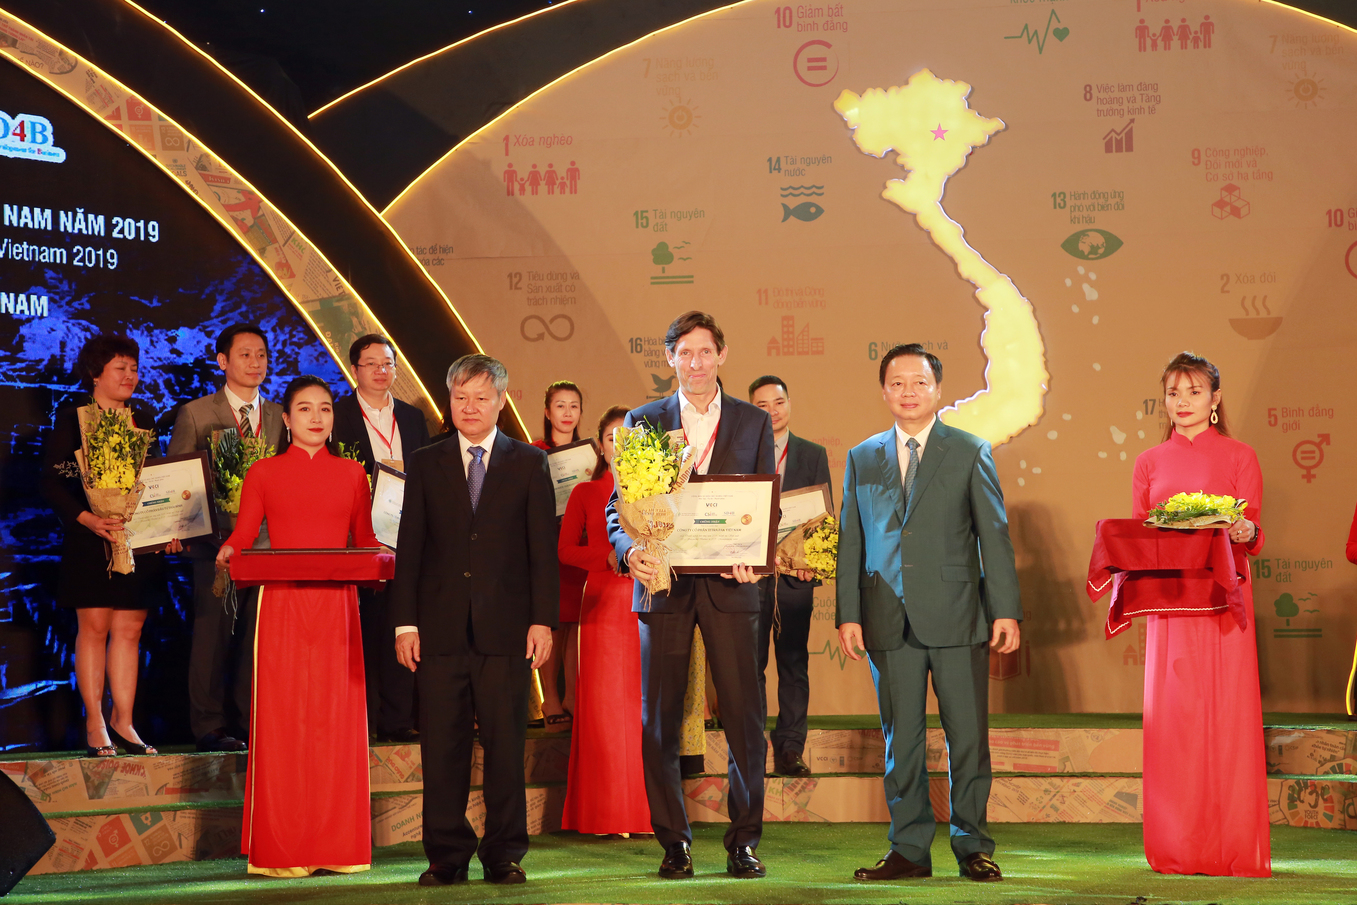  Ông Jeffrey Fielkow – Giám đốc Điều hành Tetra Pak Việt Nam nhận giải thưởng Top 10 doanh nghiệp bền vững ngành sản xuất.